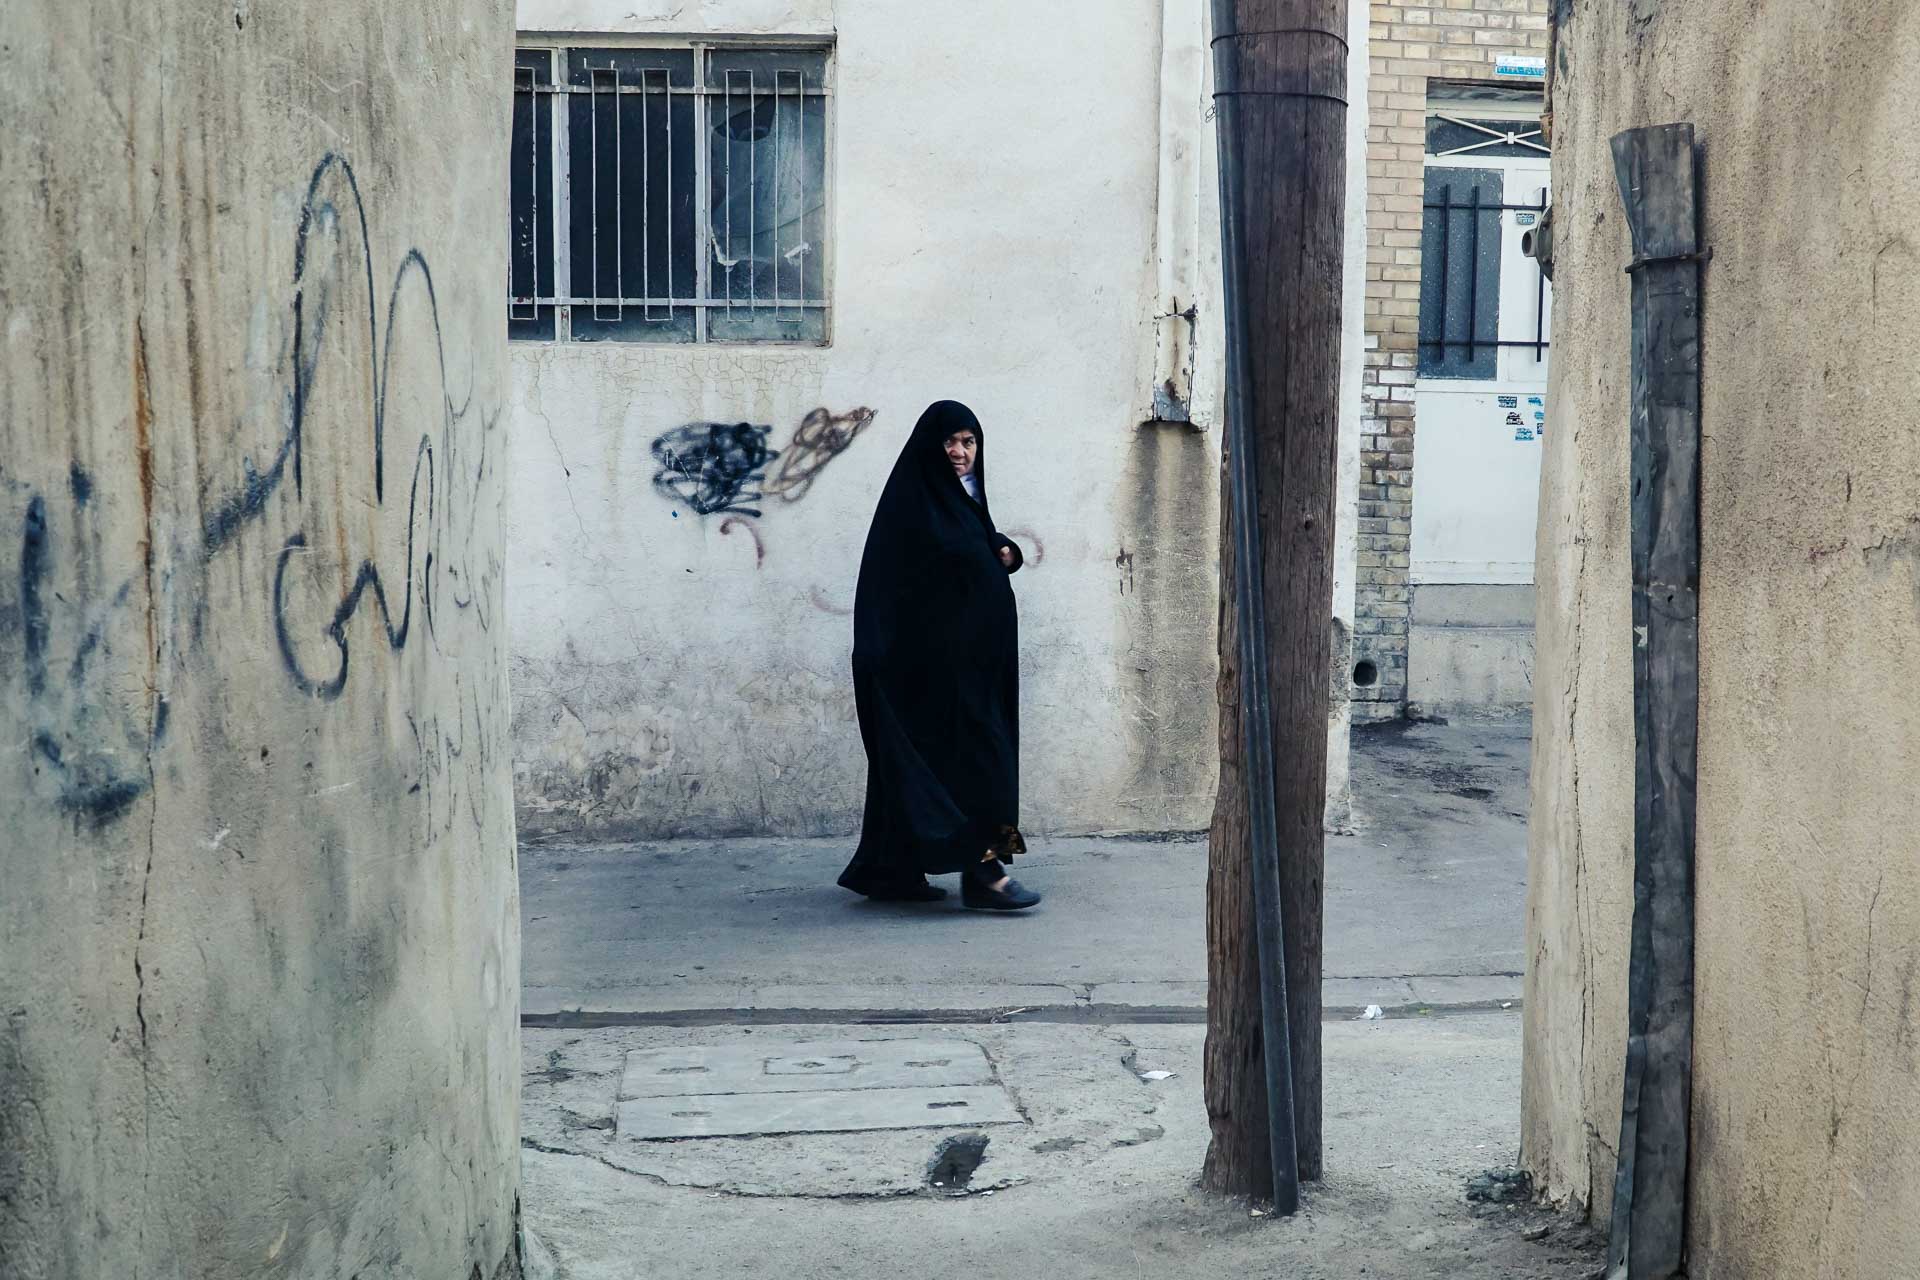 Iranian woman alone